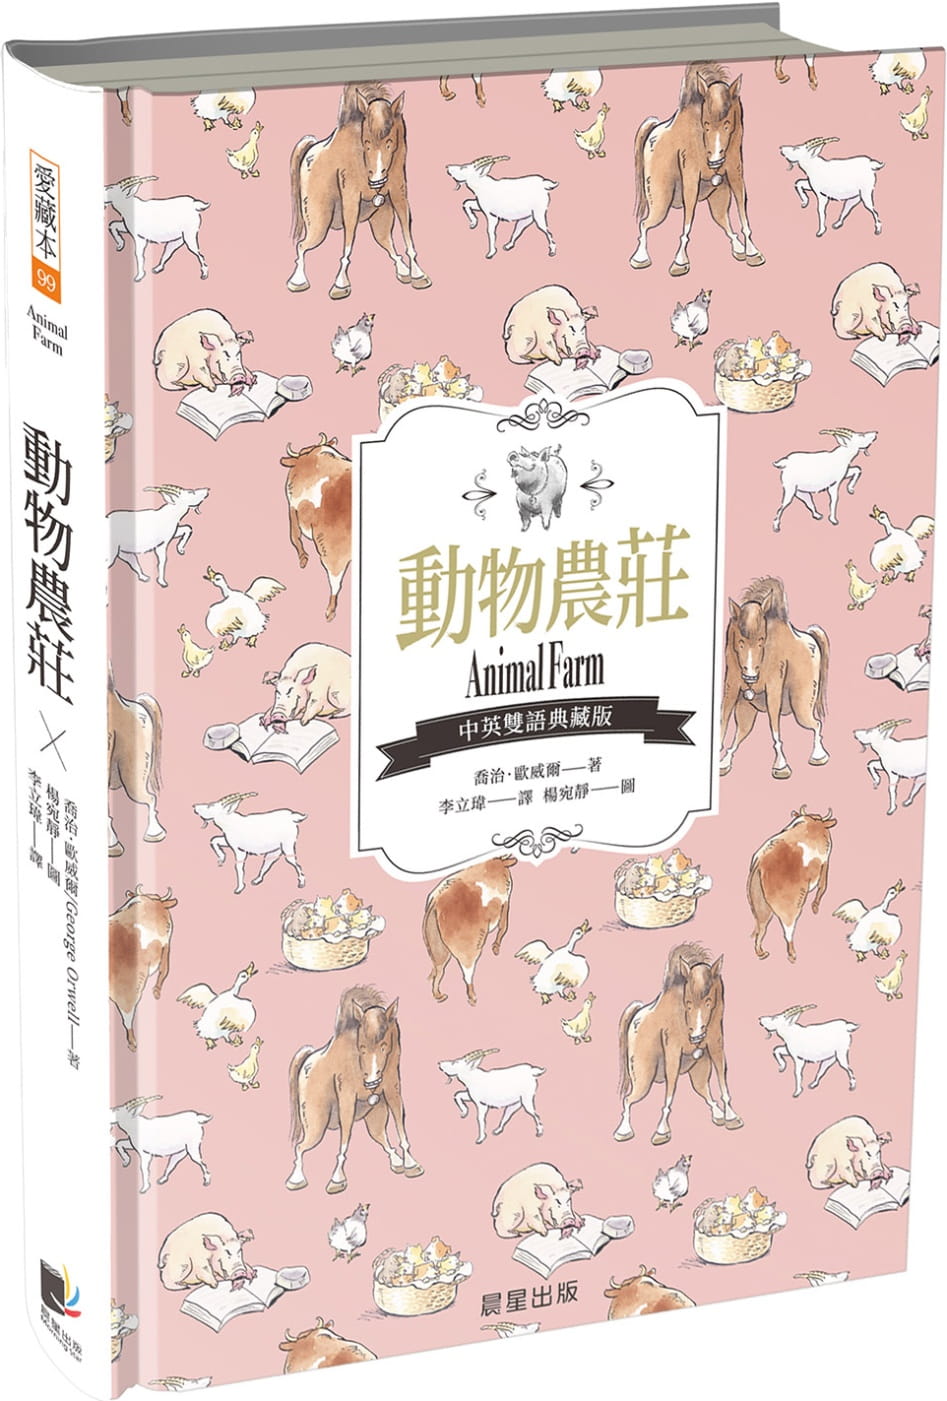 動物農莊(中英雙語典藏版)